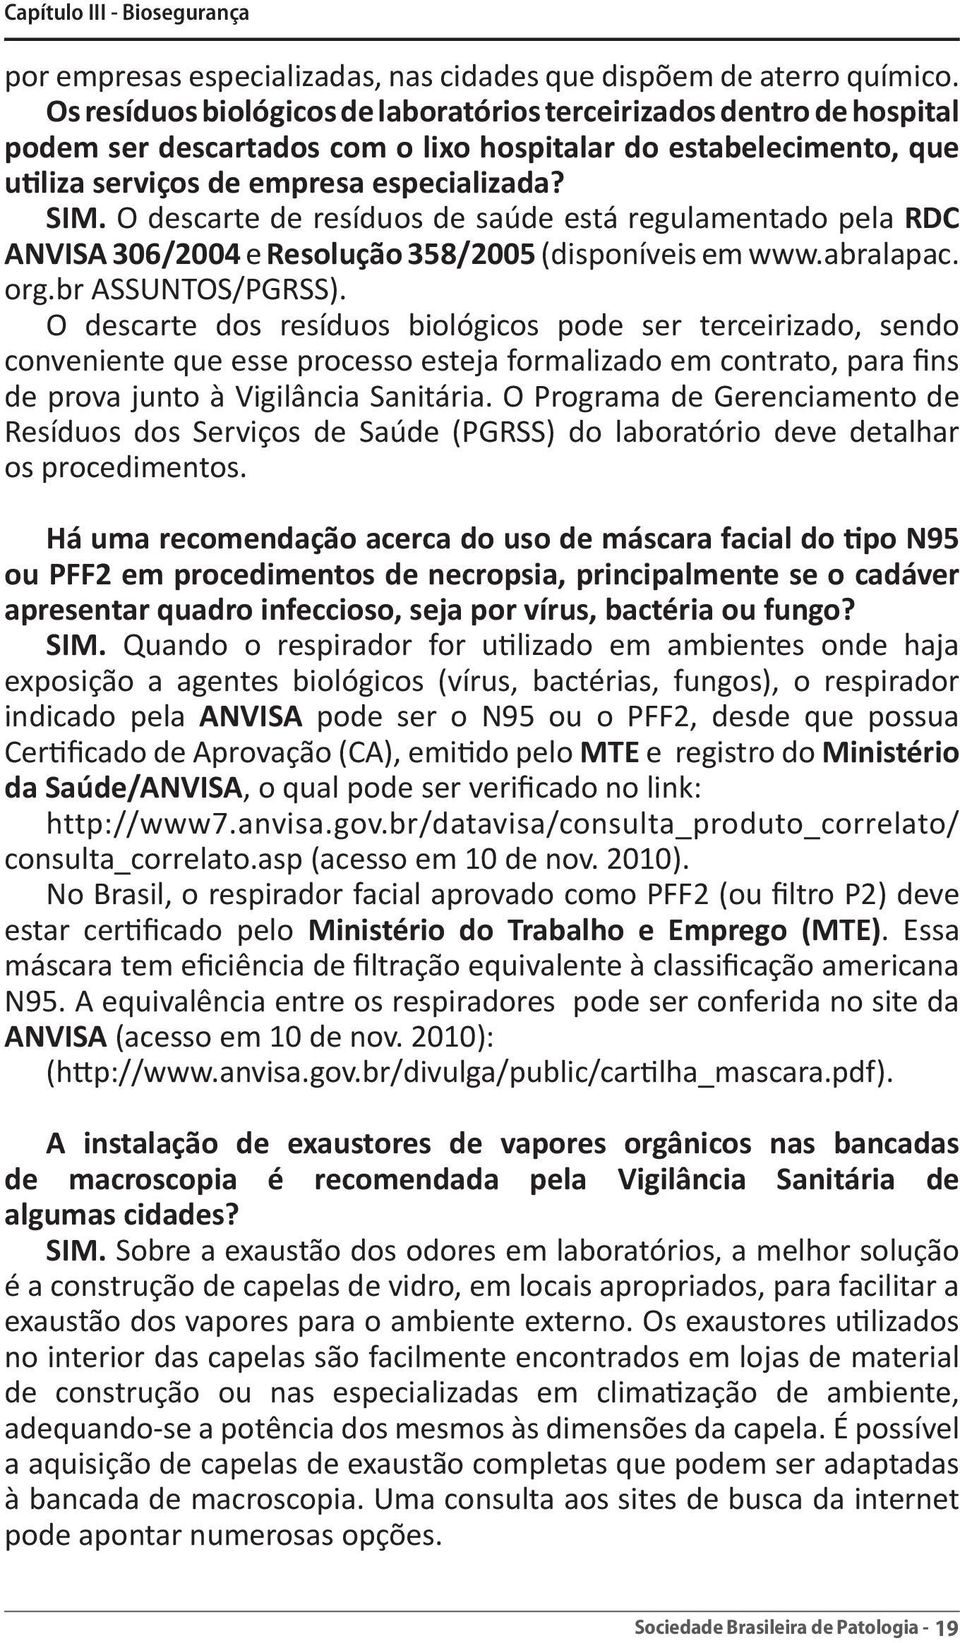 O descarte de resíduos de saúde está regulamentado pela RDC ANVISA 306/2004 e Resolução 358/2005 (disponíveis em www.abralapac. org.br ASSUNTOS/PGRSS).